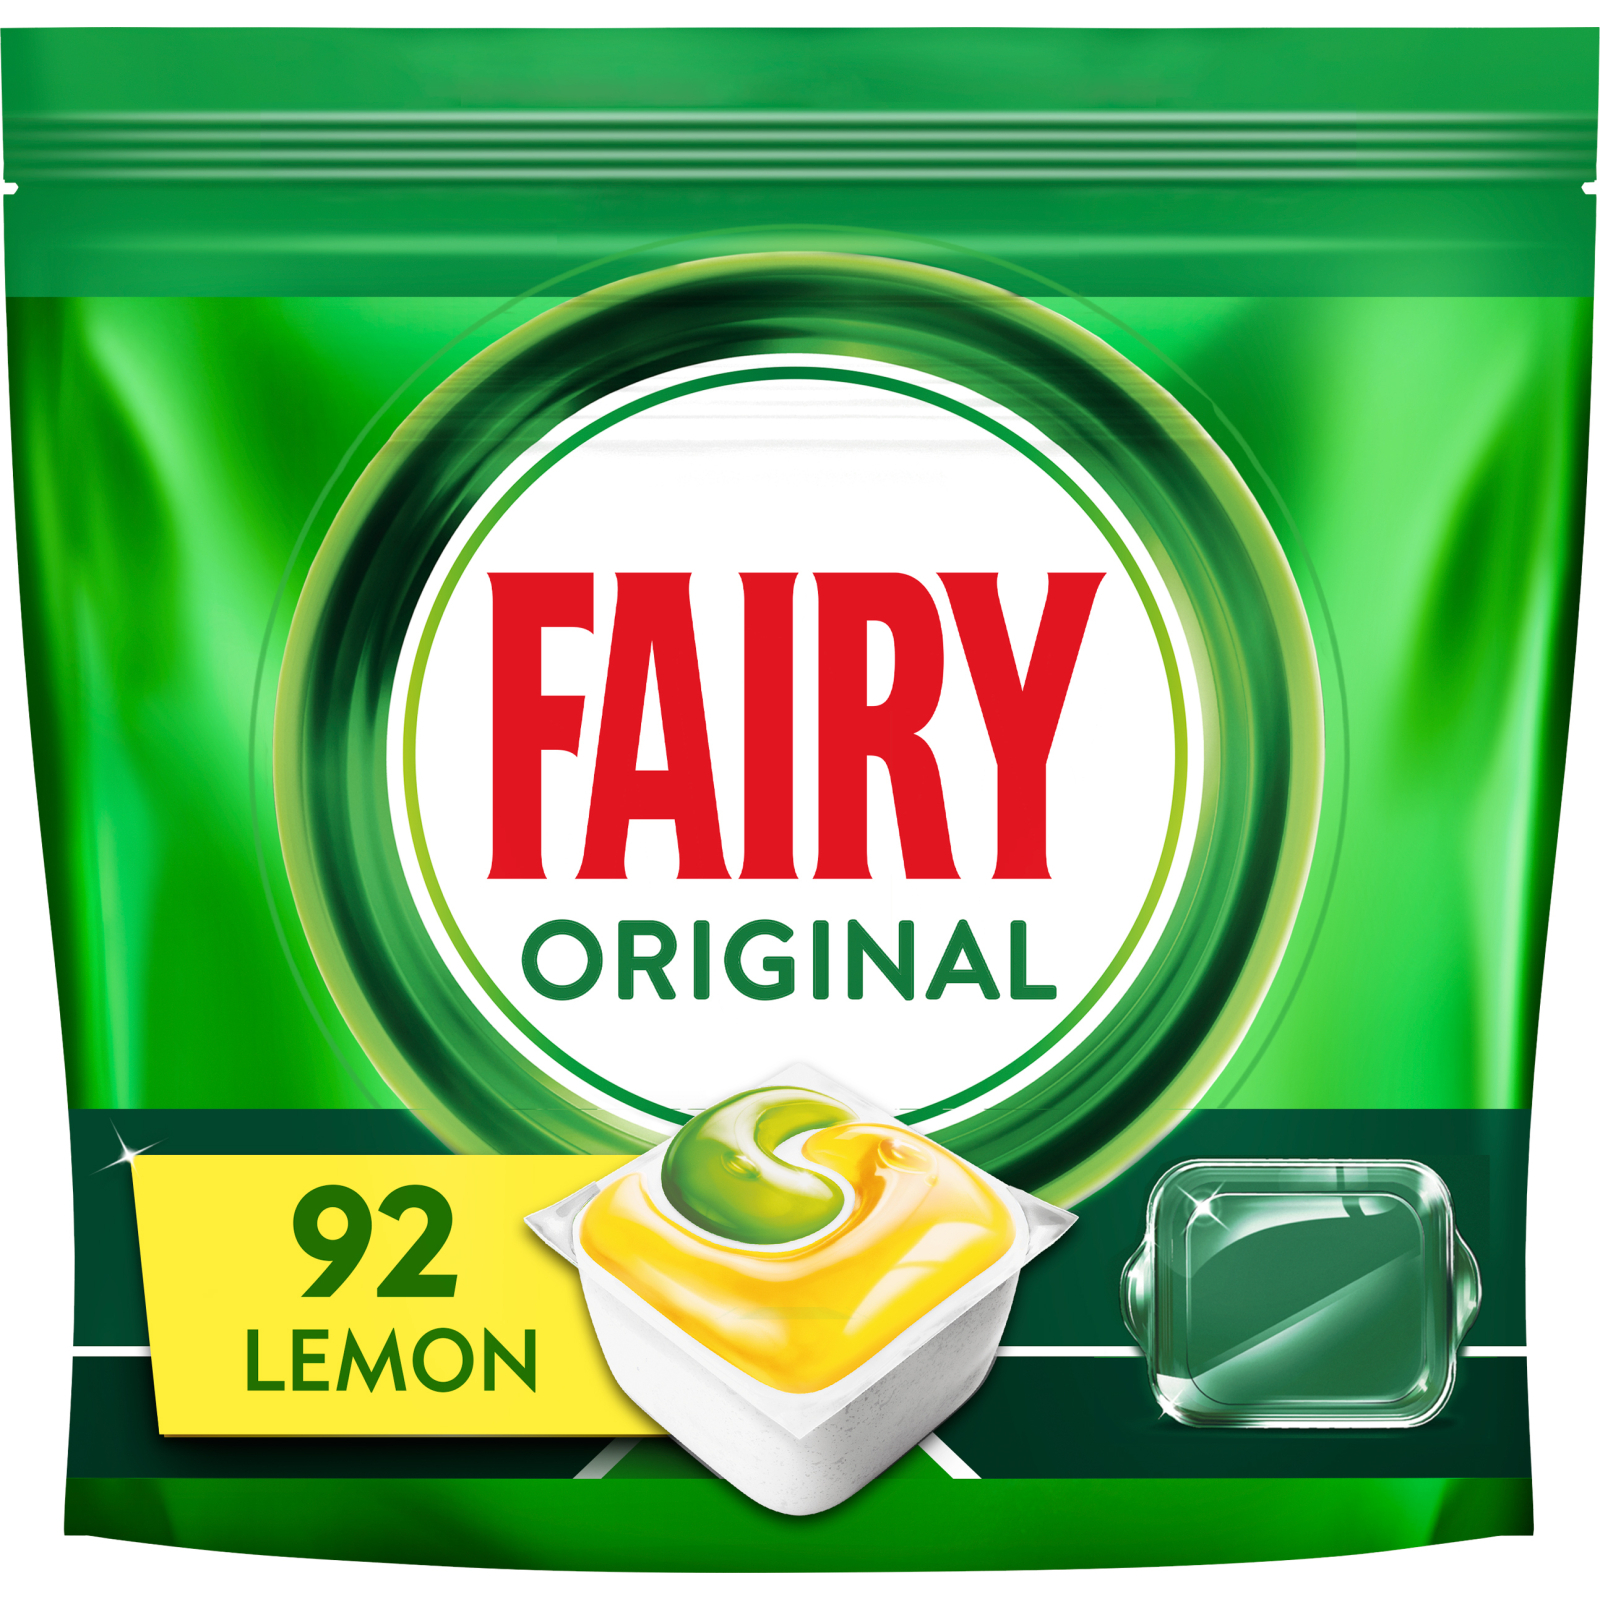 Таблетки для посудомоечных машин Fairy Original All in One Lemon 40 шт. (8001090954466)